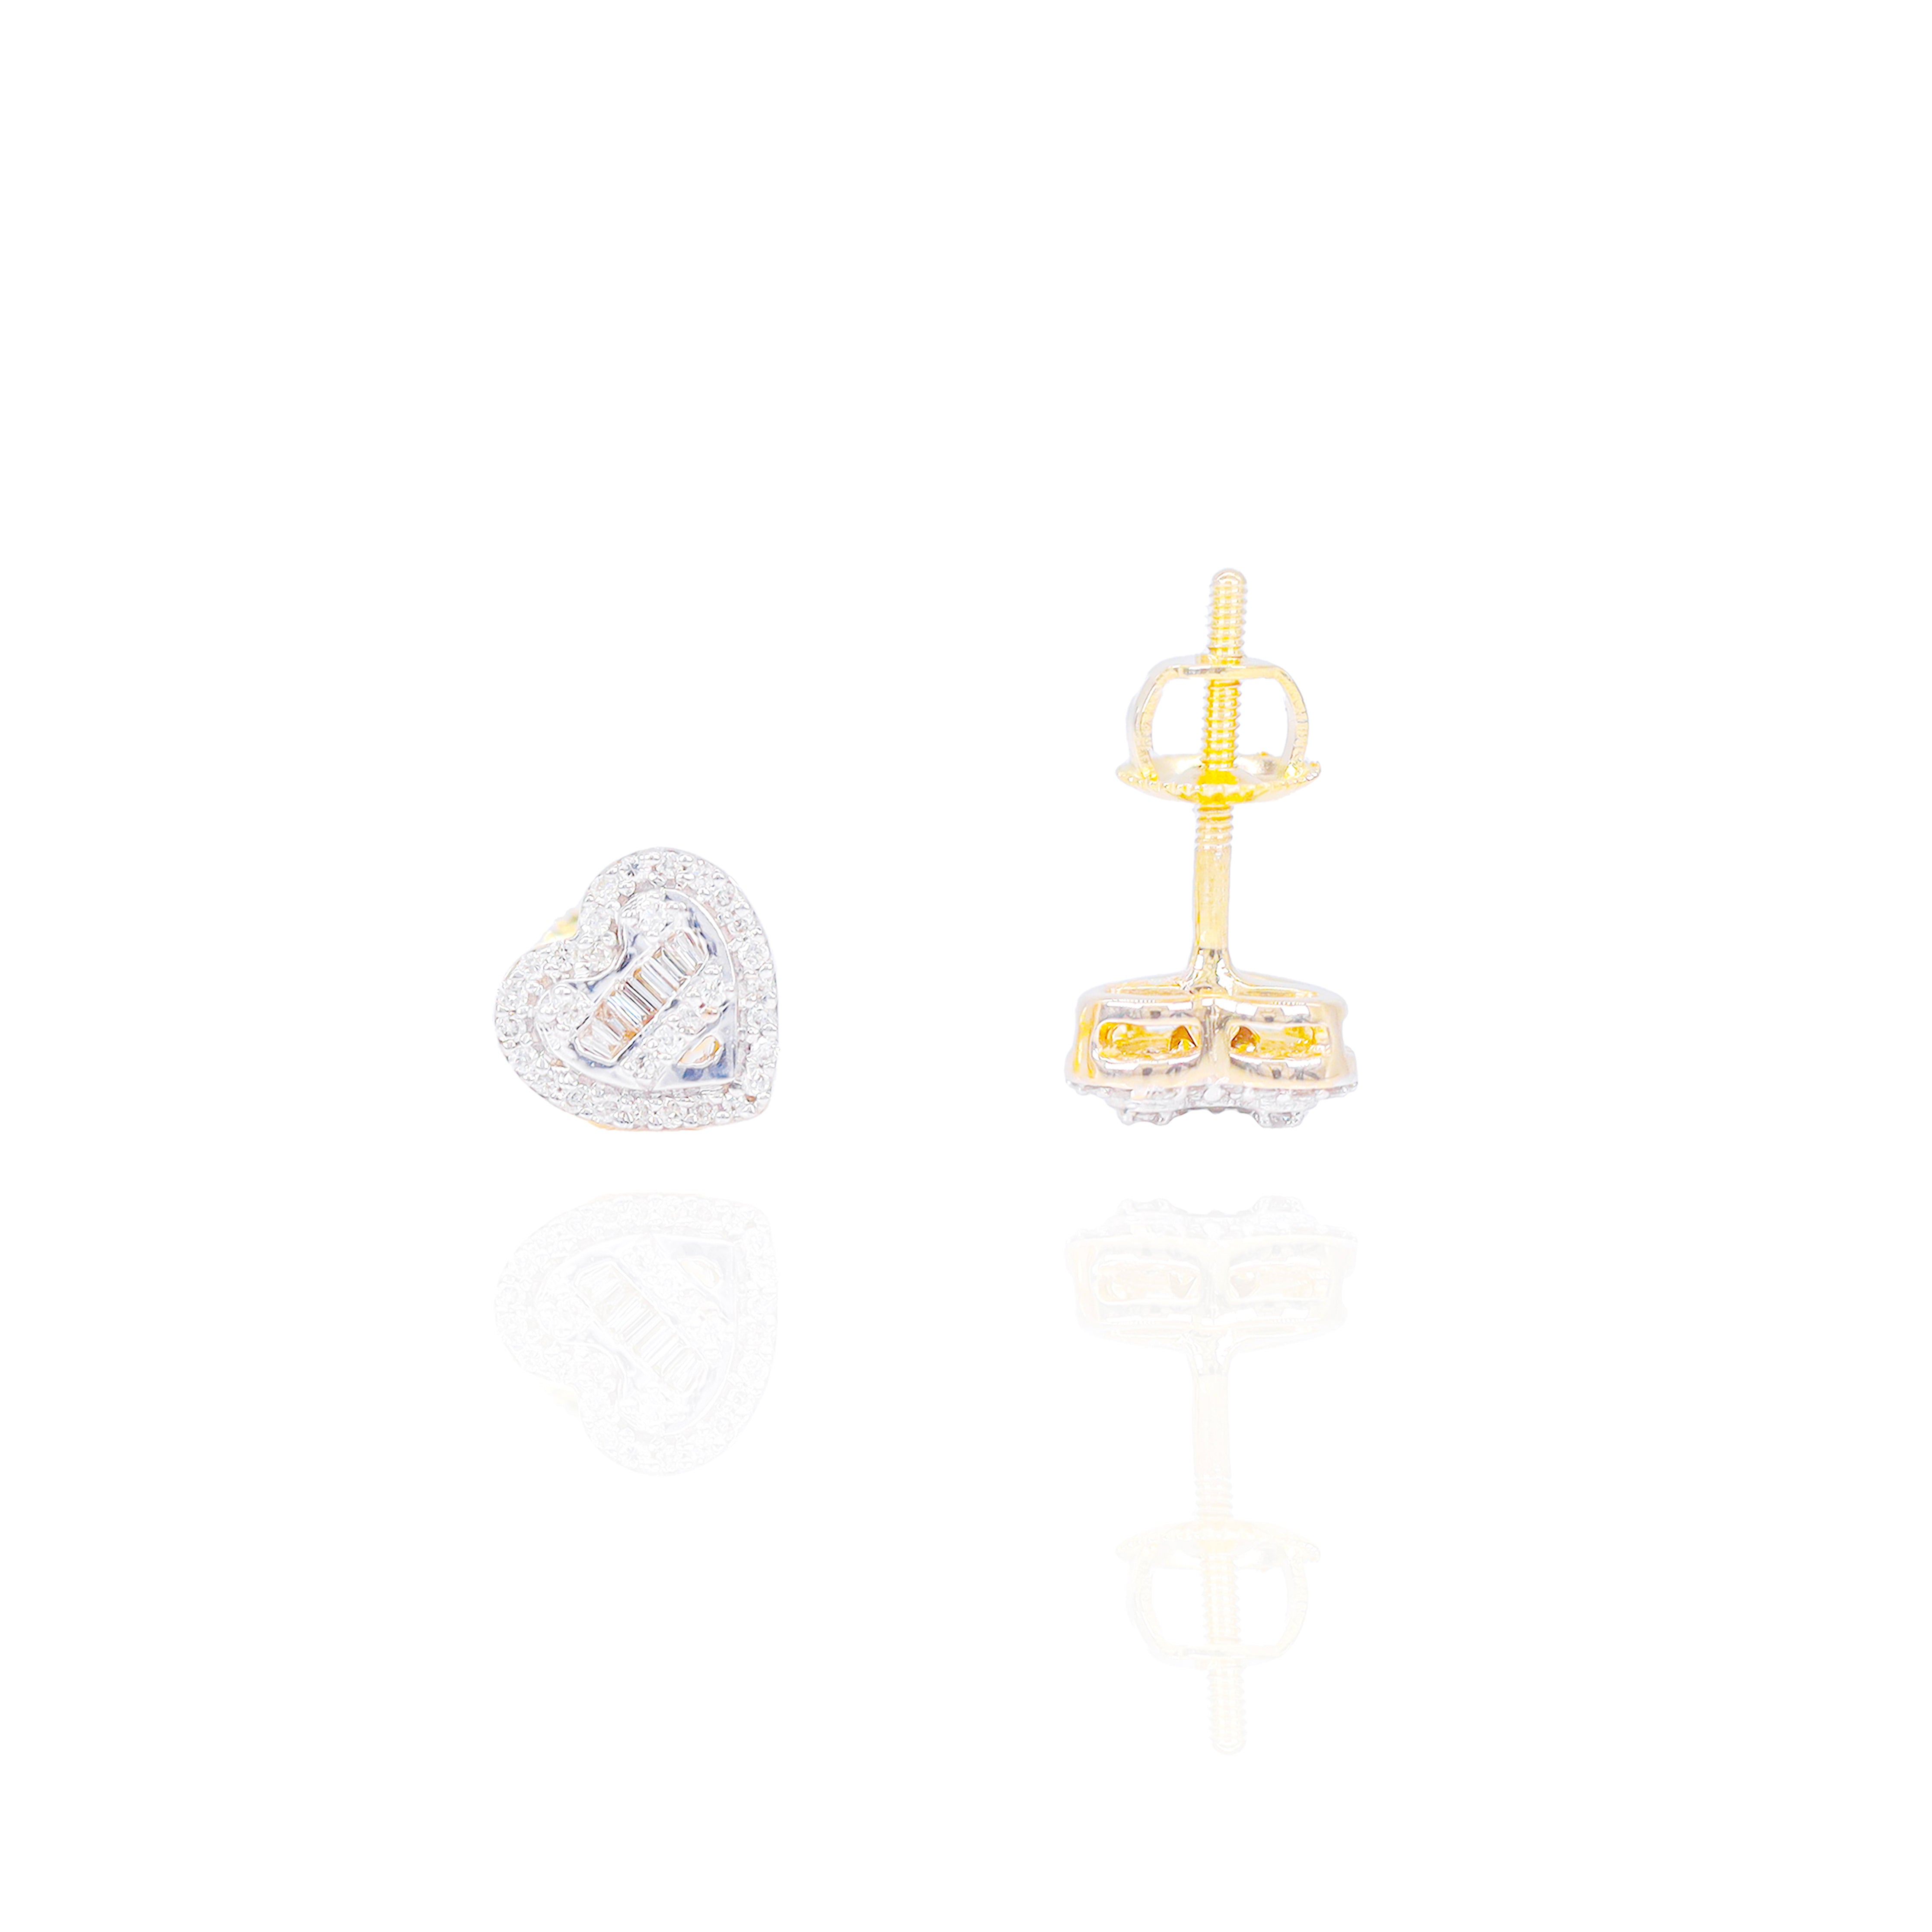 Heart Shaped Diamond Earrings w/ Baguette Center